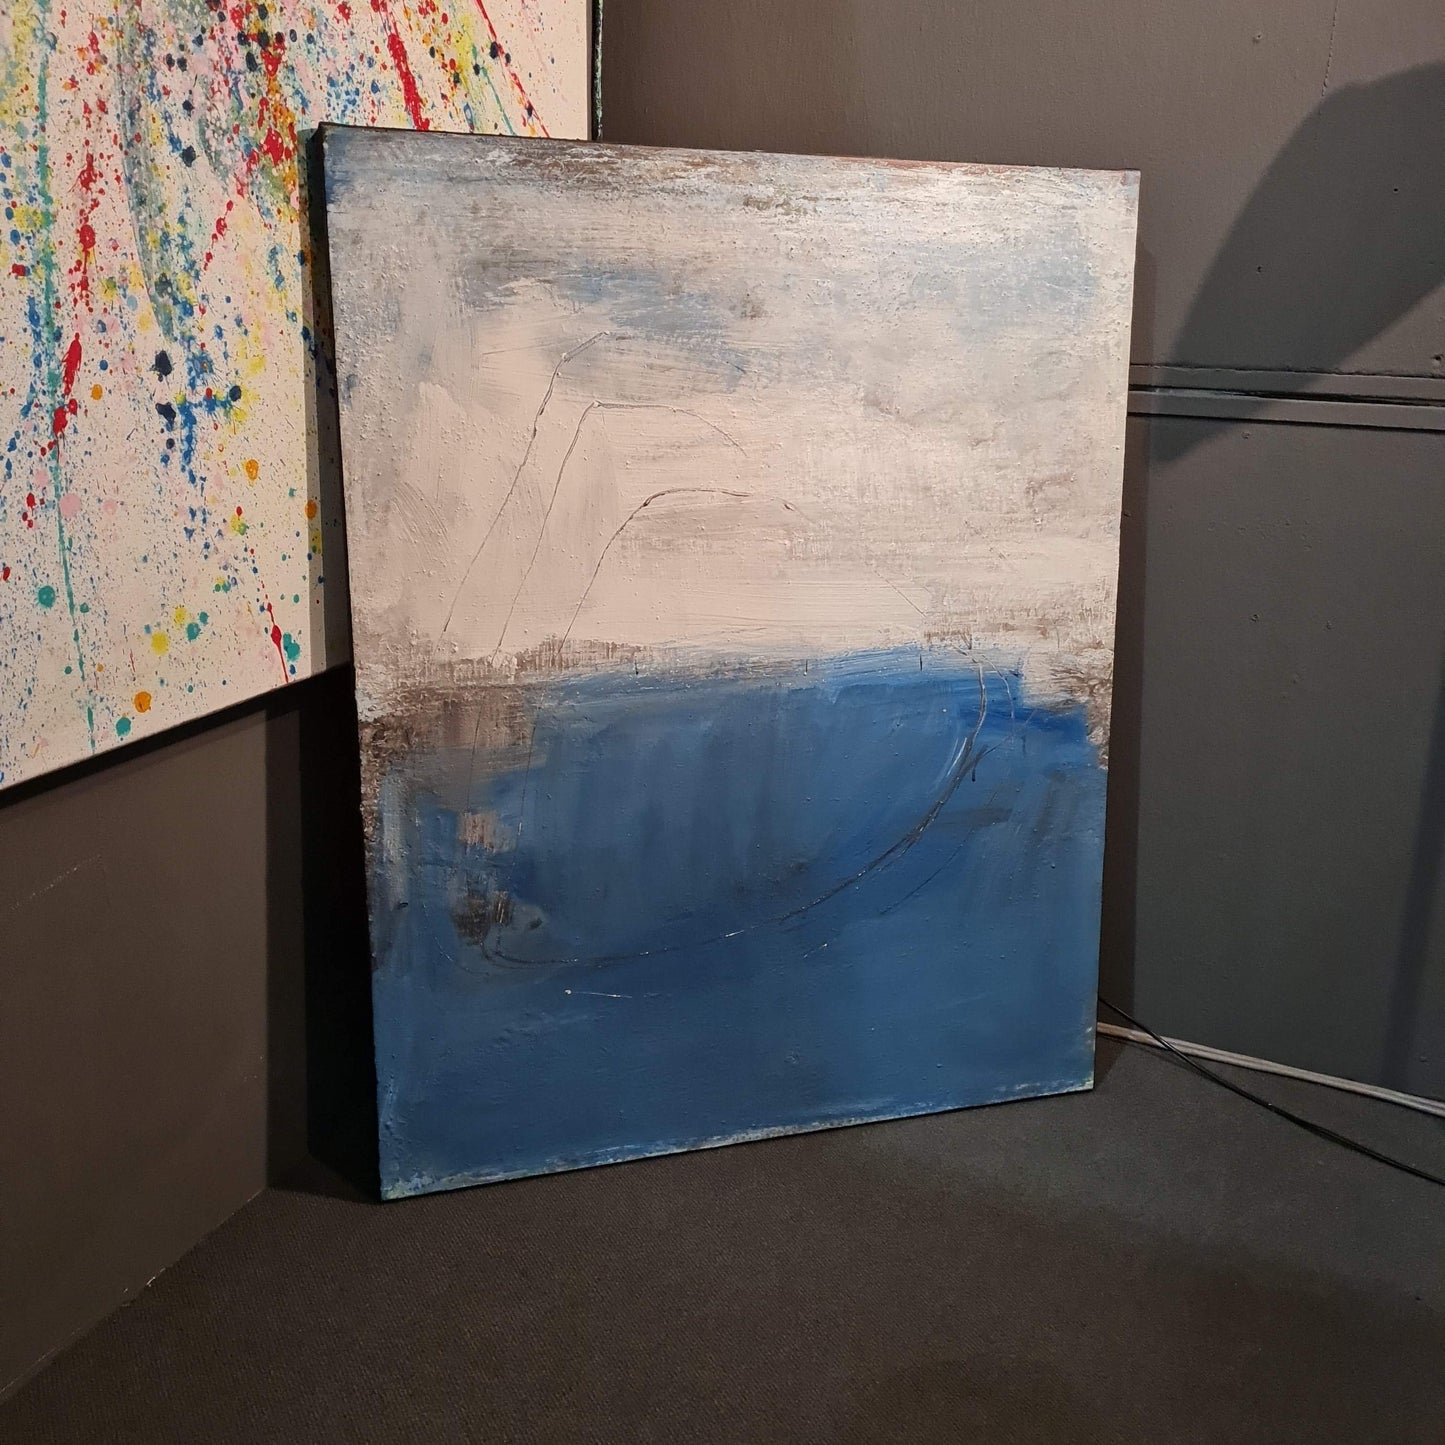 Meeresschwingung in Blau: Individuelles Auftragsbild Abstrakte Bilder & moderne Auftragsmalerei, abstrakte große bilder online kaufen, Auftrags Malere